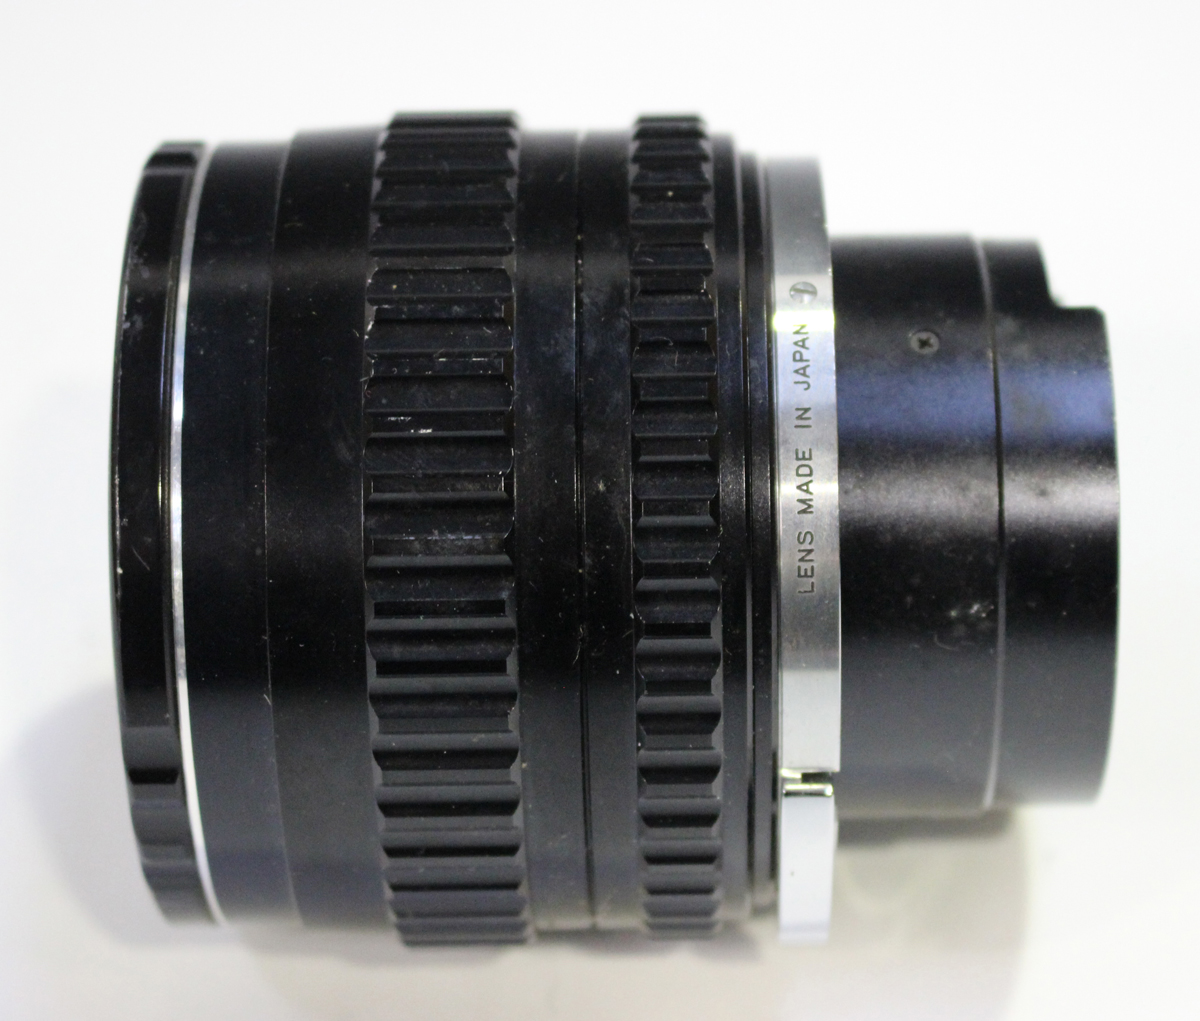 A Zenza Bronica EC-TL camera, No. CB363536, with Zenzanon MC 1:2.4 f=80mm lens, No. 801757, together - Image 3 of 12